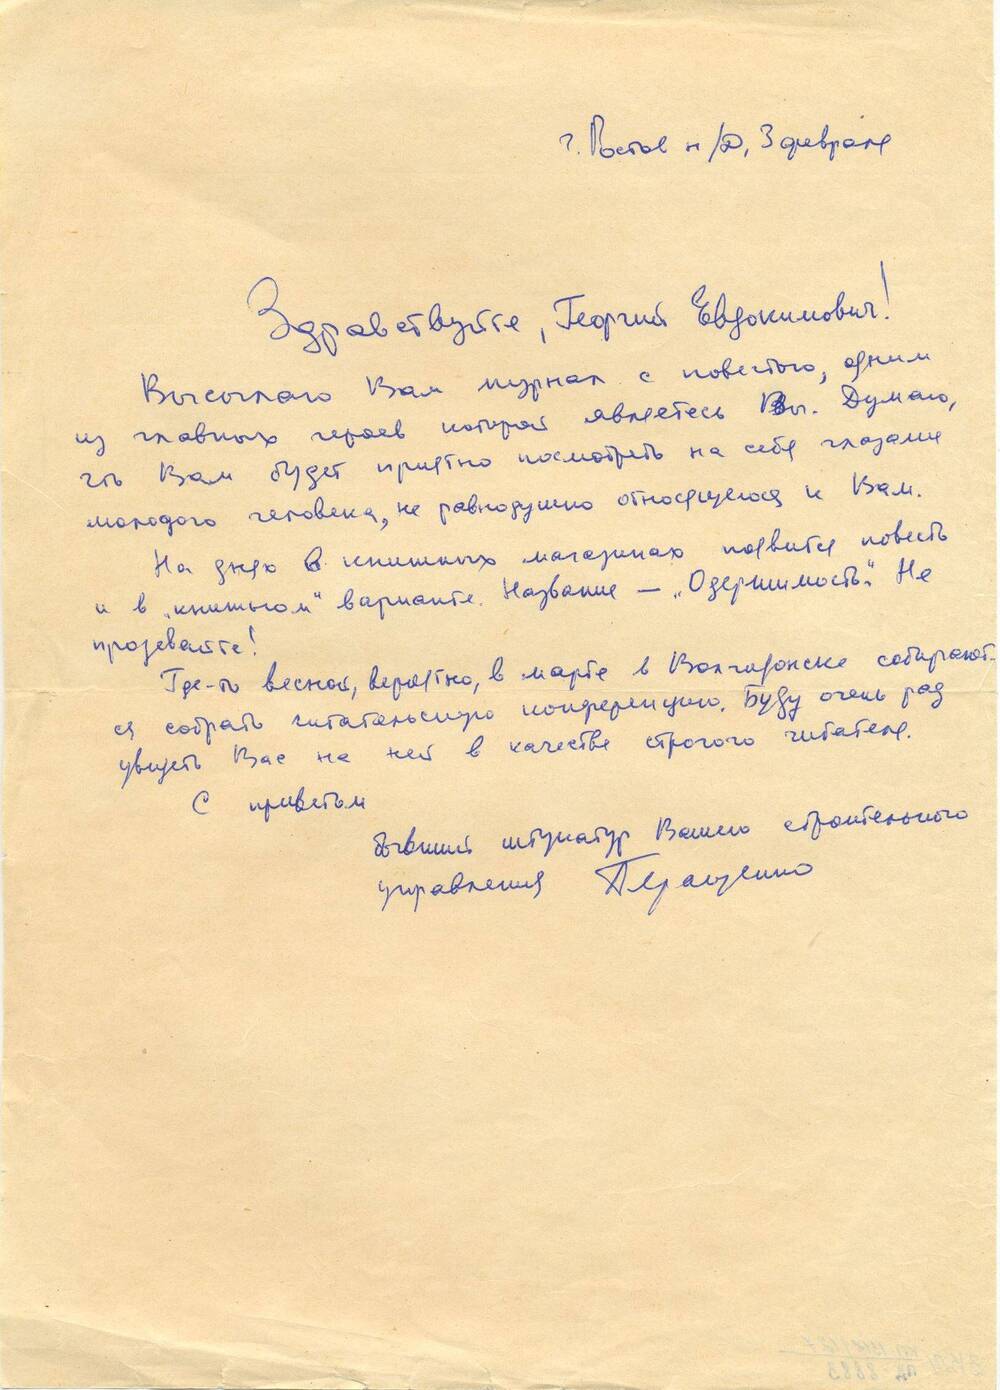 Письмо Шпаченко Георгию Евдокимовичу от А. Геращенко, бывшего штукатура строительного управления